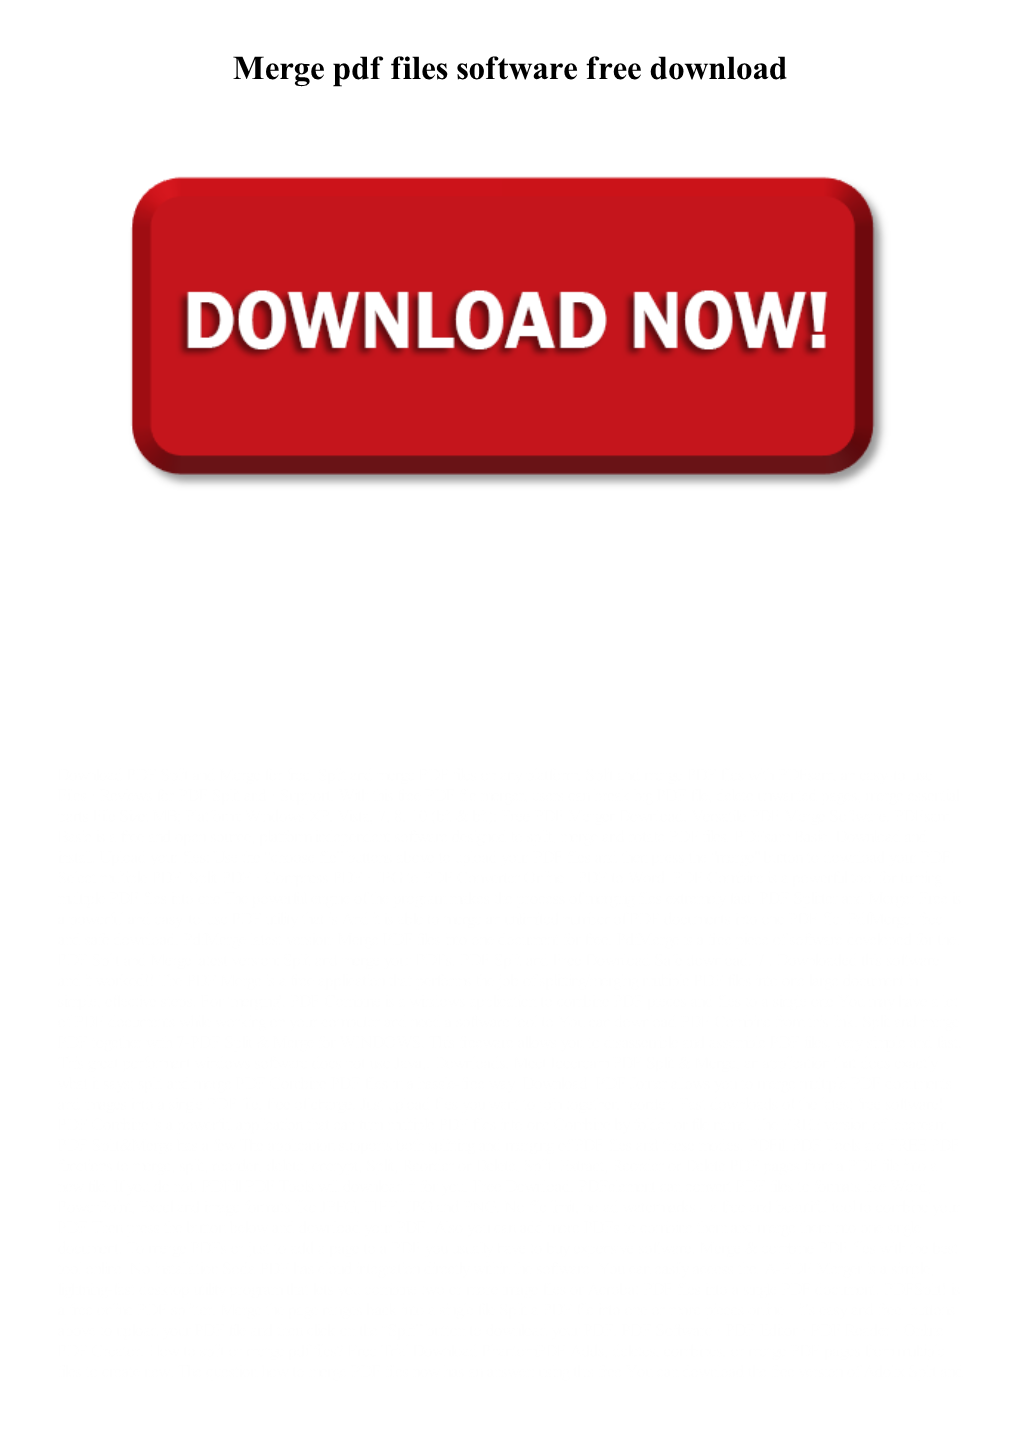 Merge Pdf Files Software Free Download